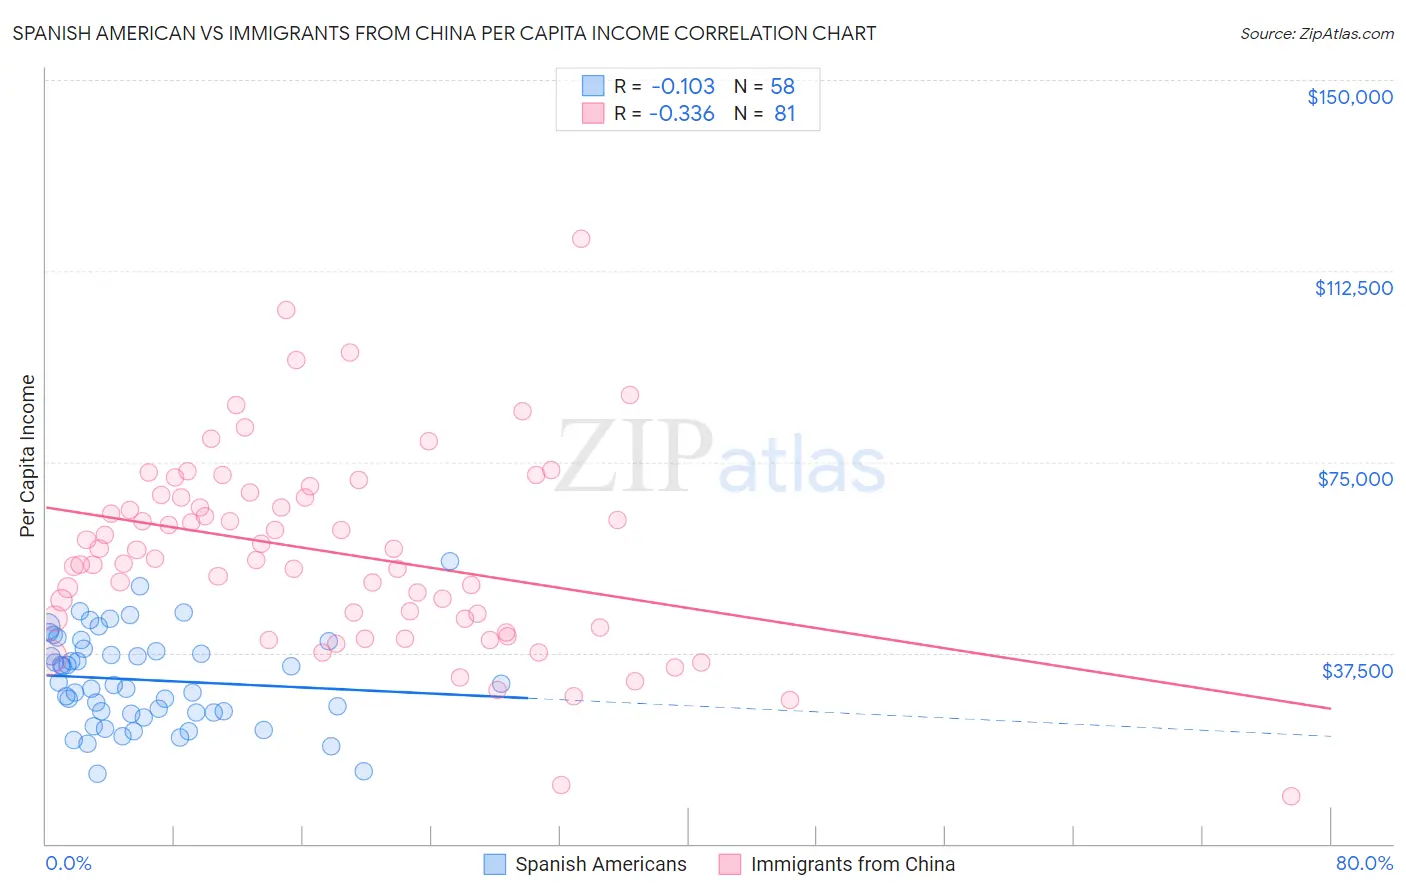 Spanish American vs Immigrants from China Per Capita Income